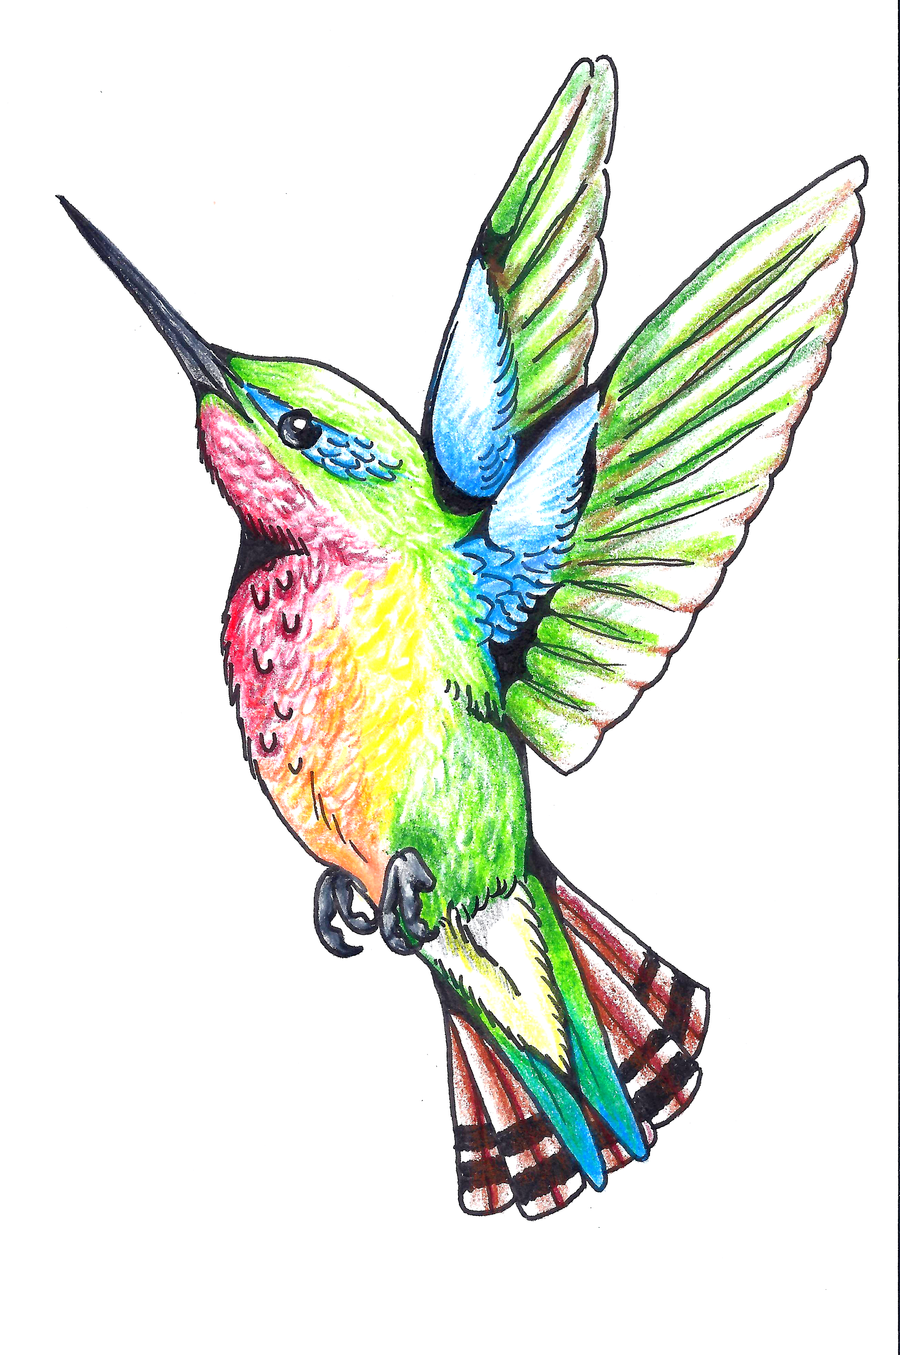 Tattoos Of Humming Bird: Hummingbird Tattoo Designs Free